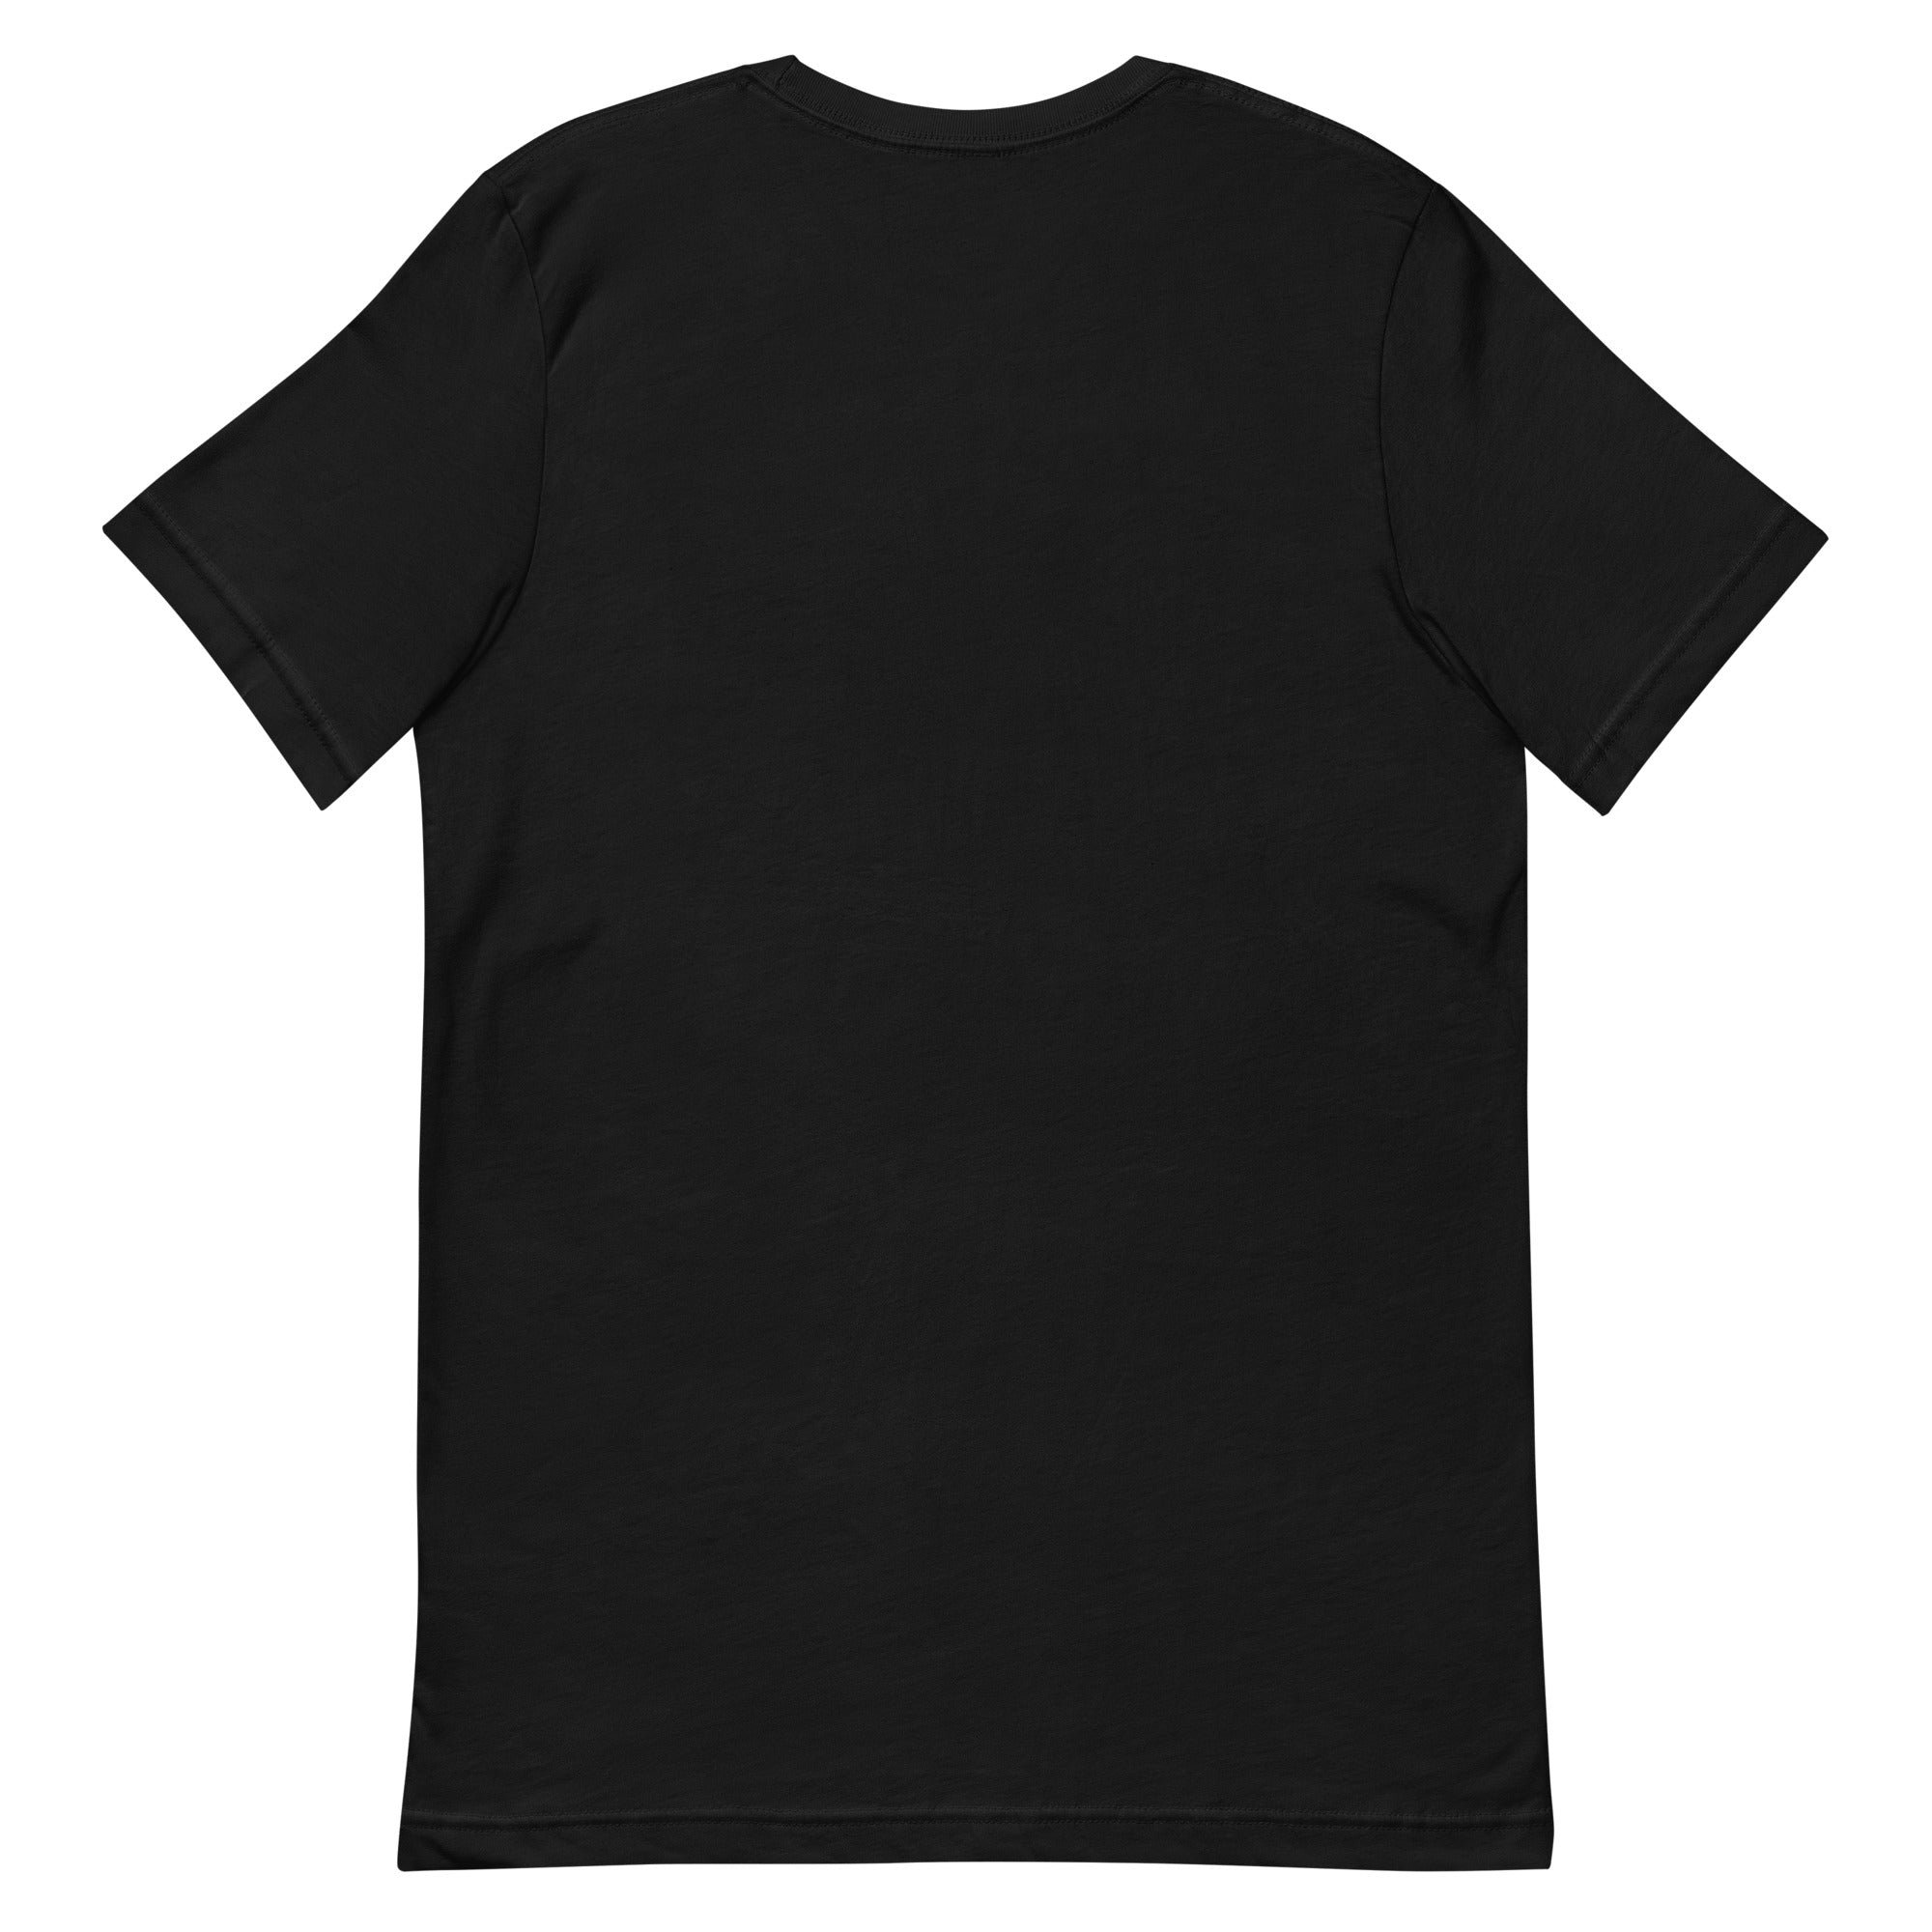 'Southeast DC/ 202 Washington, DC' (Emblem Front Only) Black Unisex T-shirt